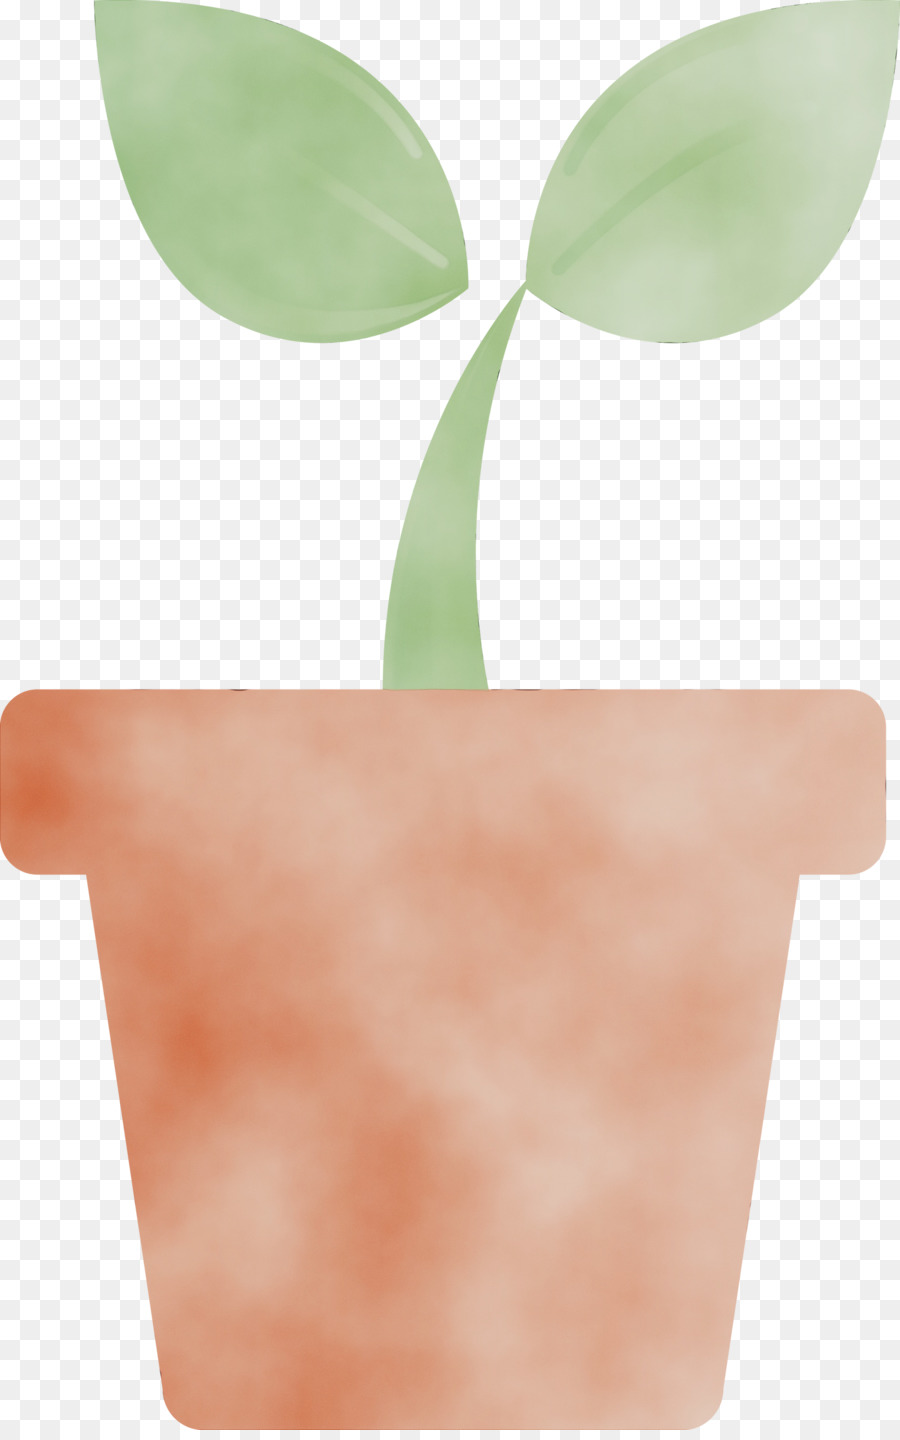 foglia vaso di fiori pianta albero fiore - 